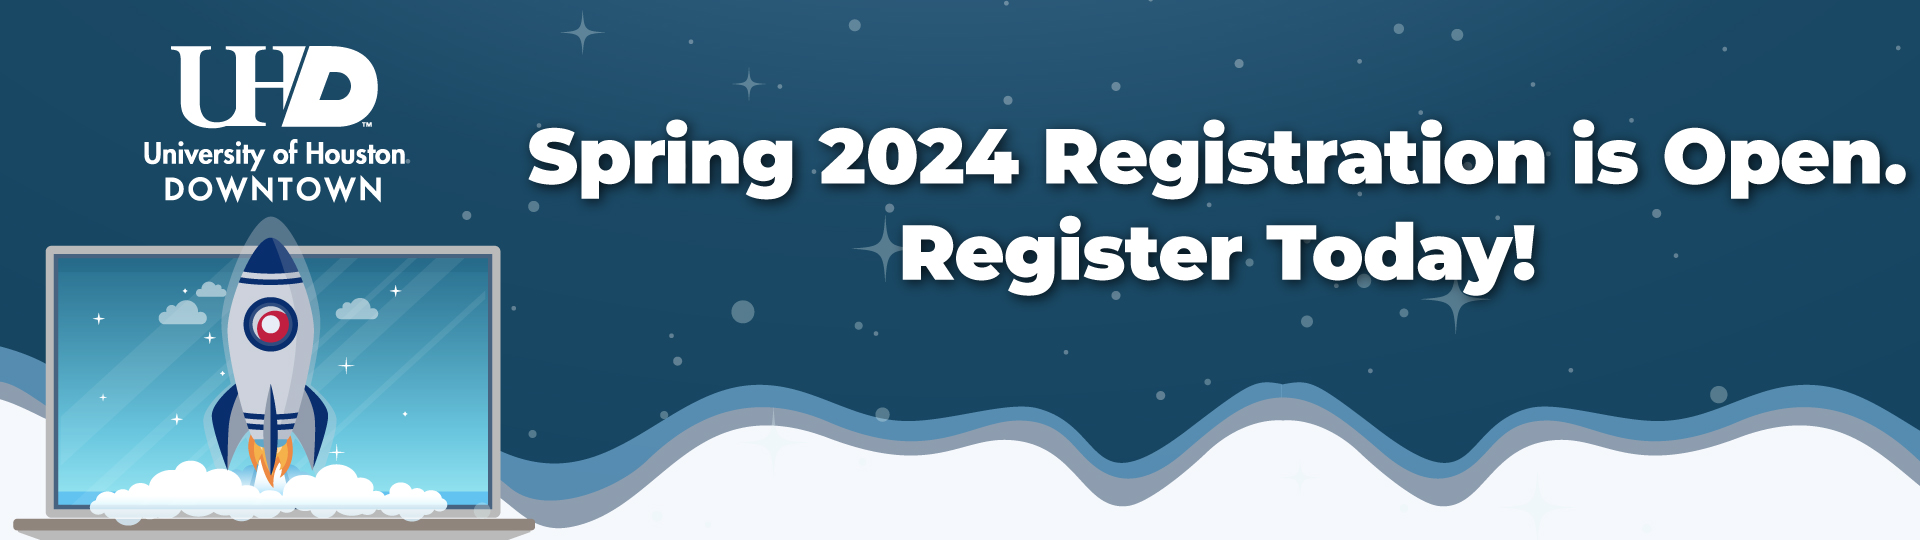 Rocket on laptop. Spring 2024 Registrationis Open. Register Today.